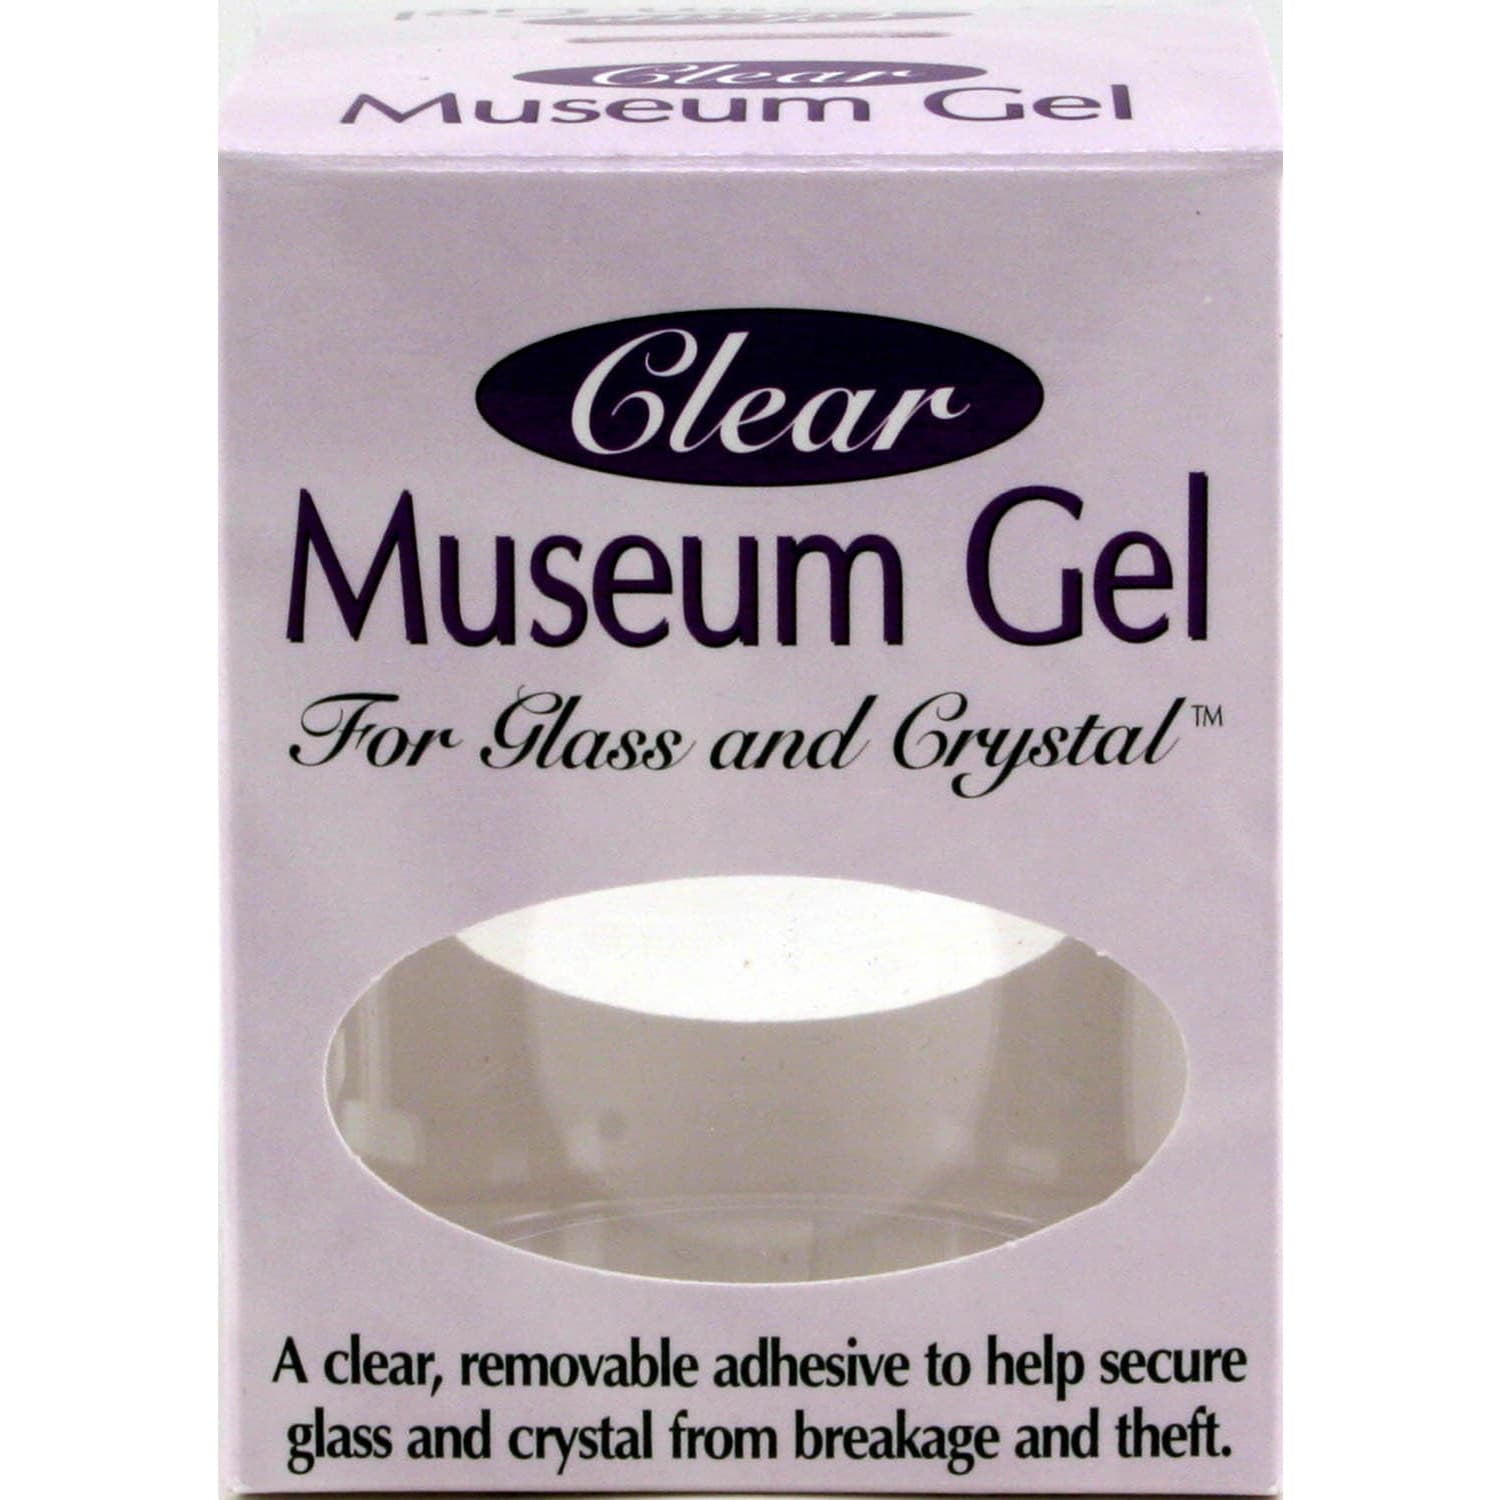 Clear Museum Gel